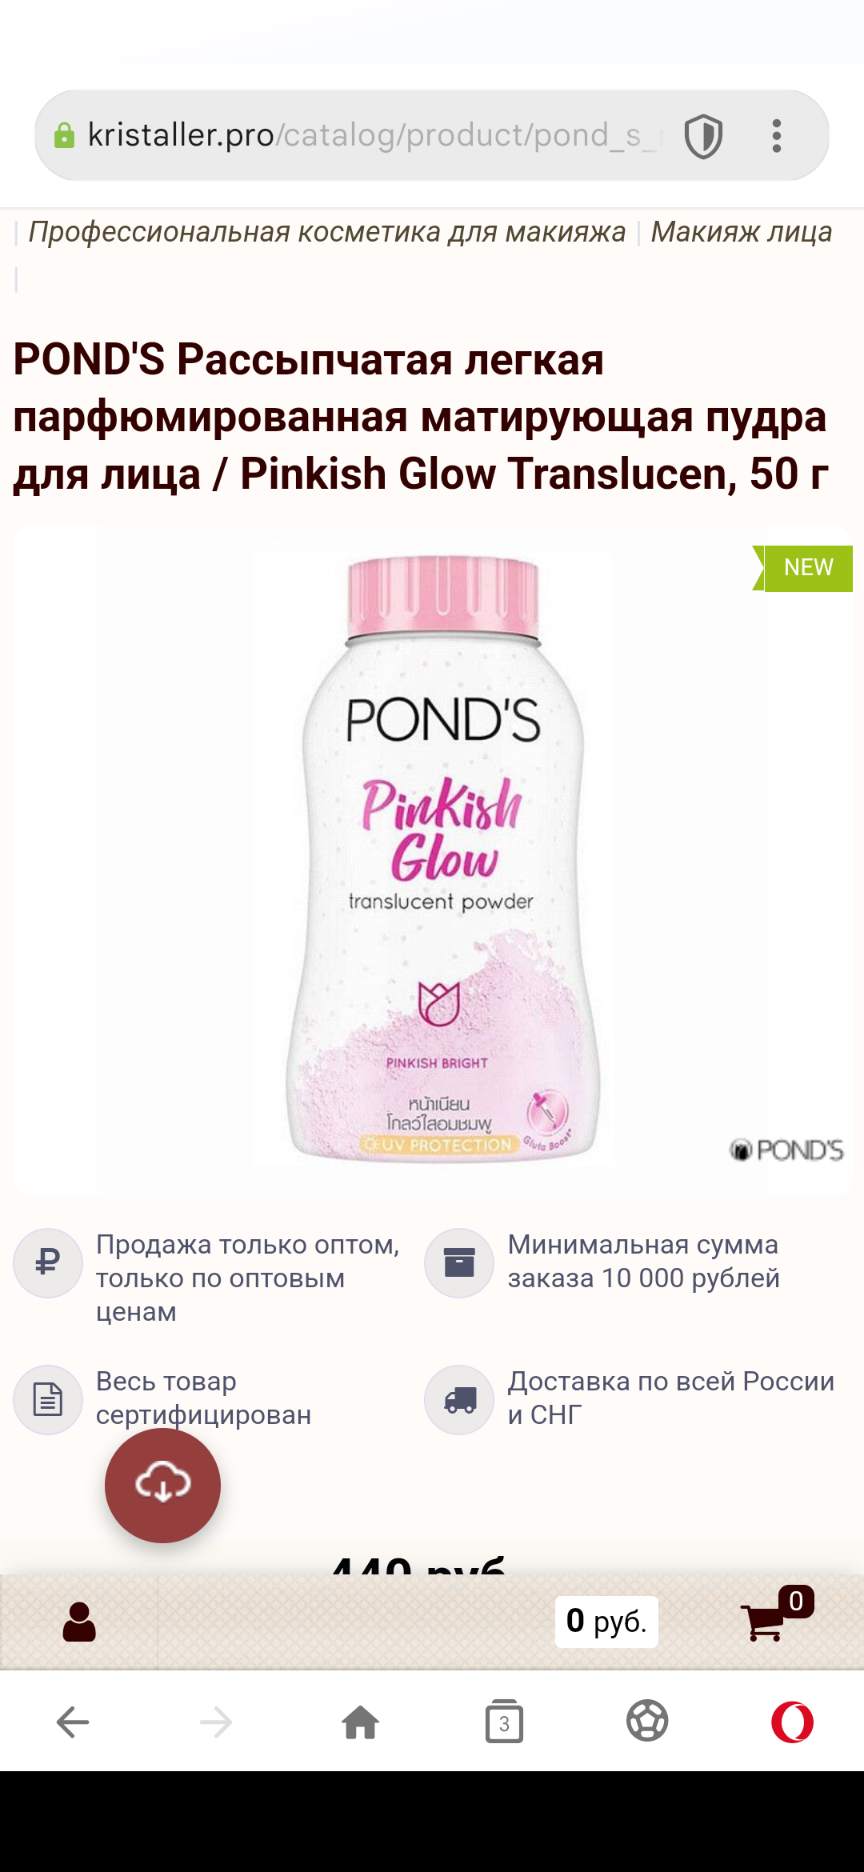 В наличии POND'S Рассыпчатая легкая парфюмированная матирующая пудра для лица / Pinkish Glow Translucen, 50 г